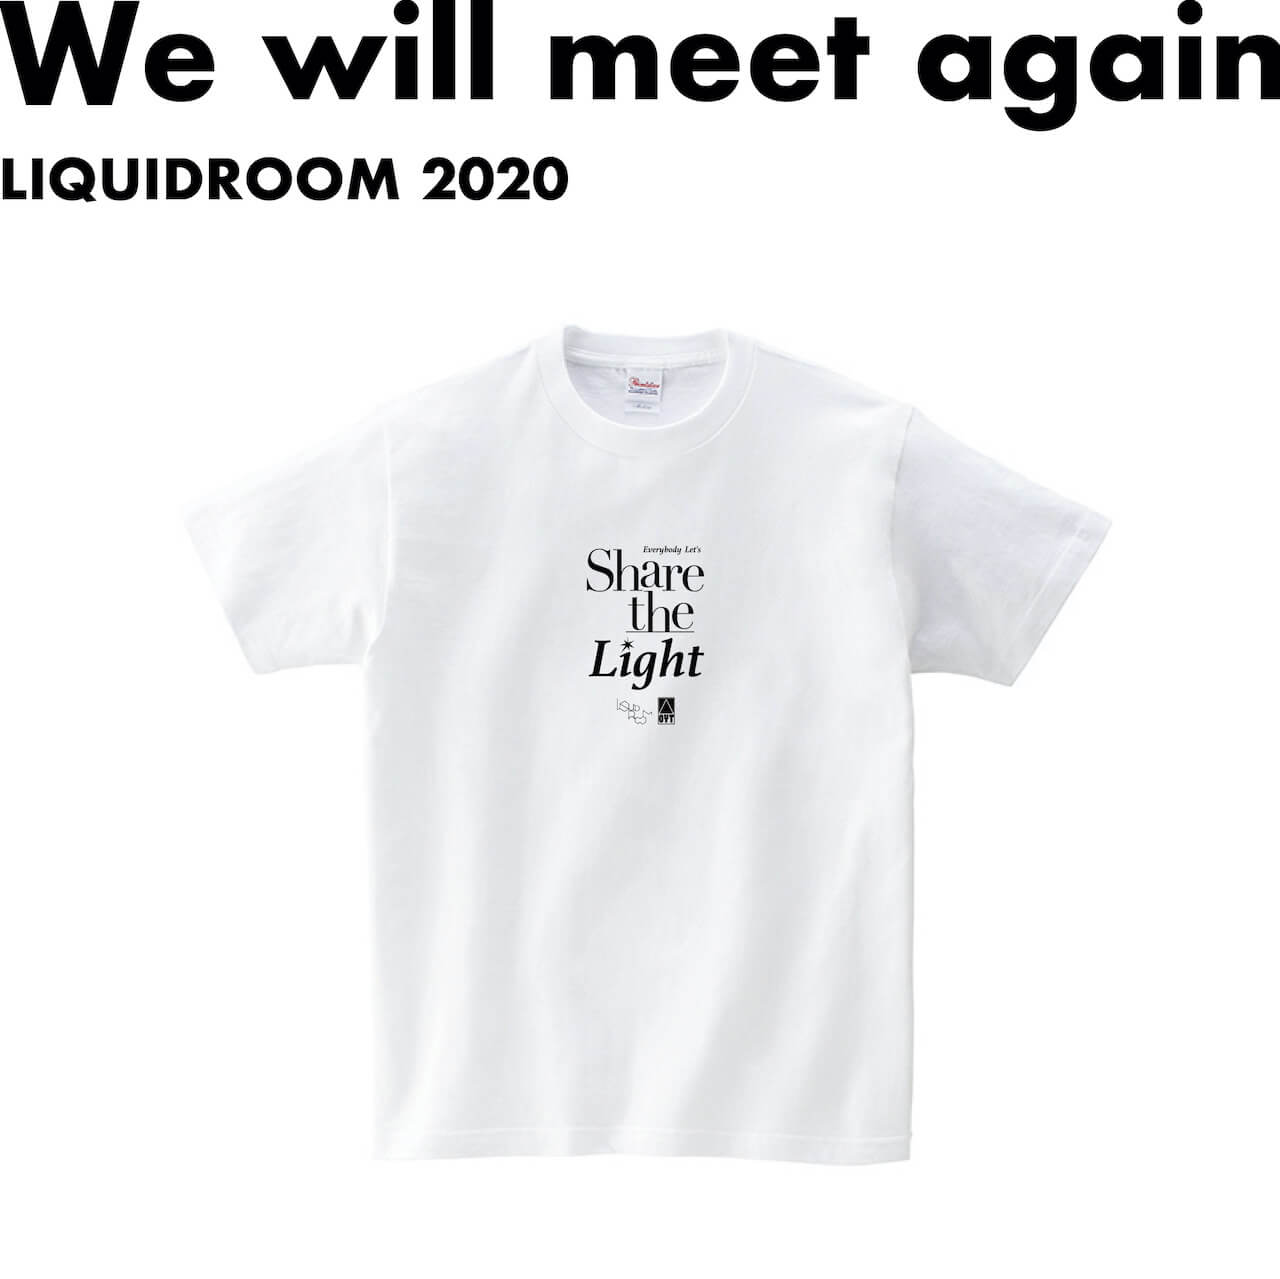 「灯りを分けあおう」──思い出野郎AチームとLIQUIDROOMのコラボTシャツが〈We will meet again〉から music200731-liquidroom-oyat-3